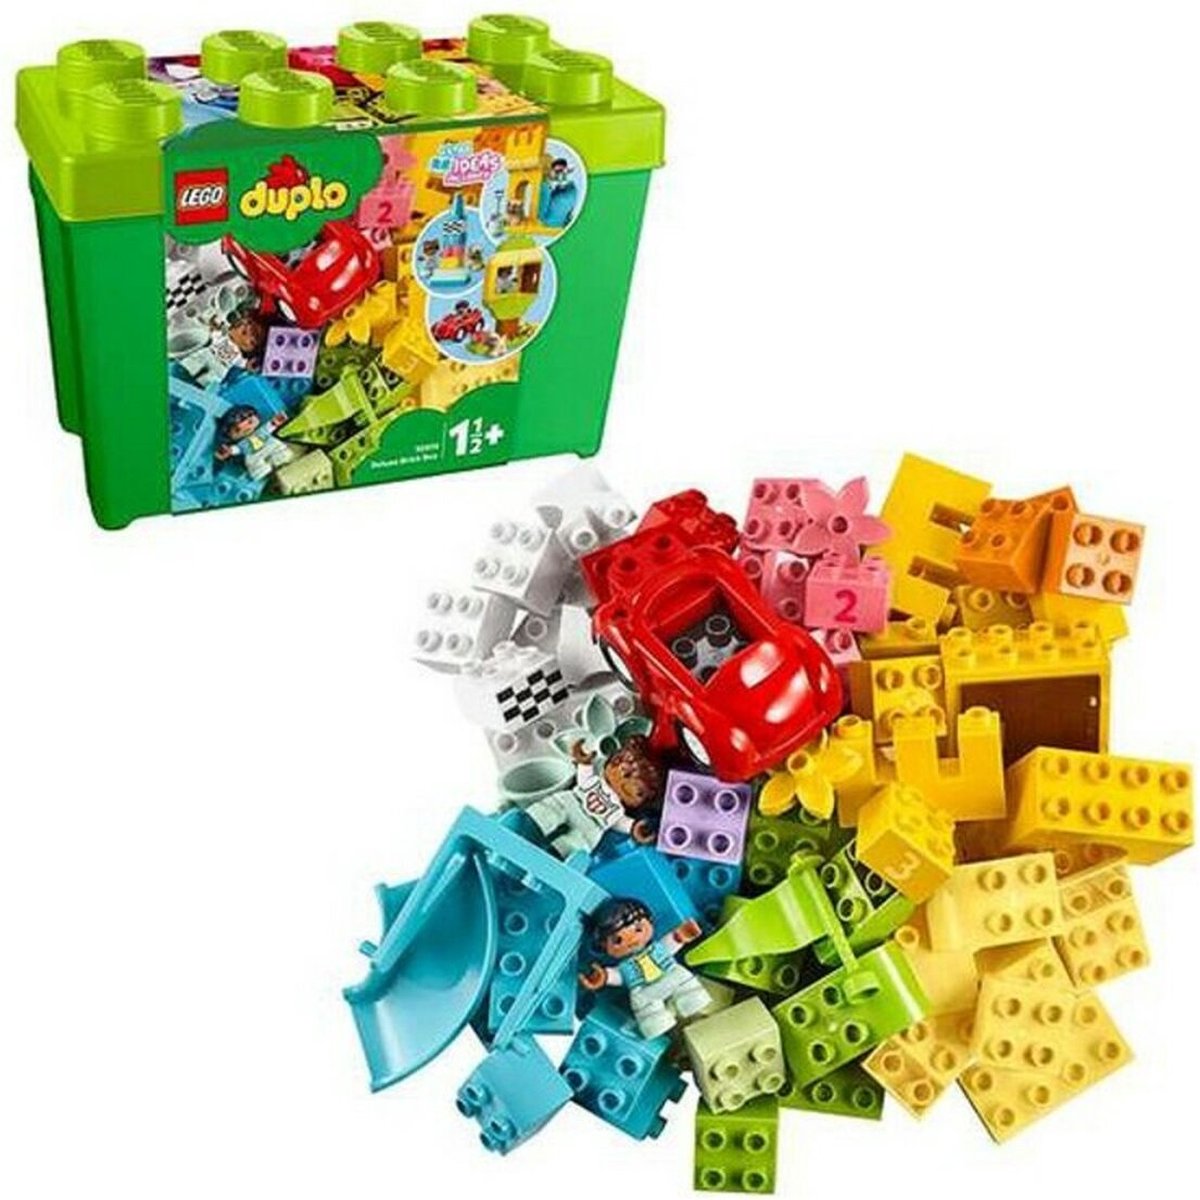 LEGO 10980 LEGO® DUPLO® LA PLAQUE DE CONSTRUCTION VERTE